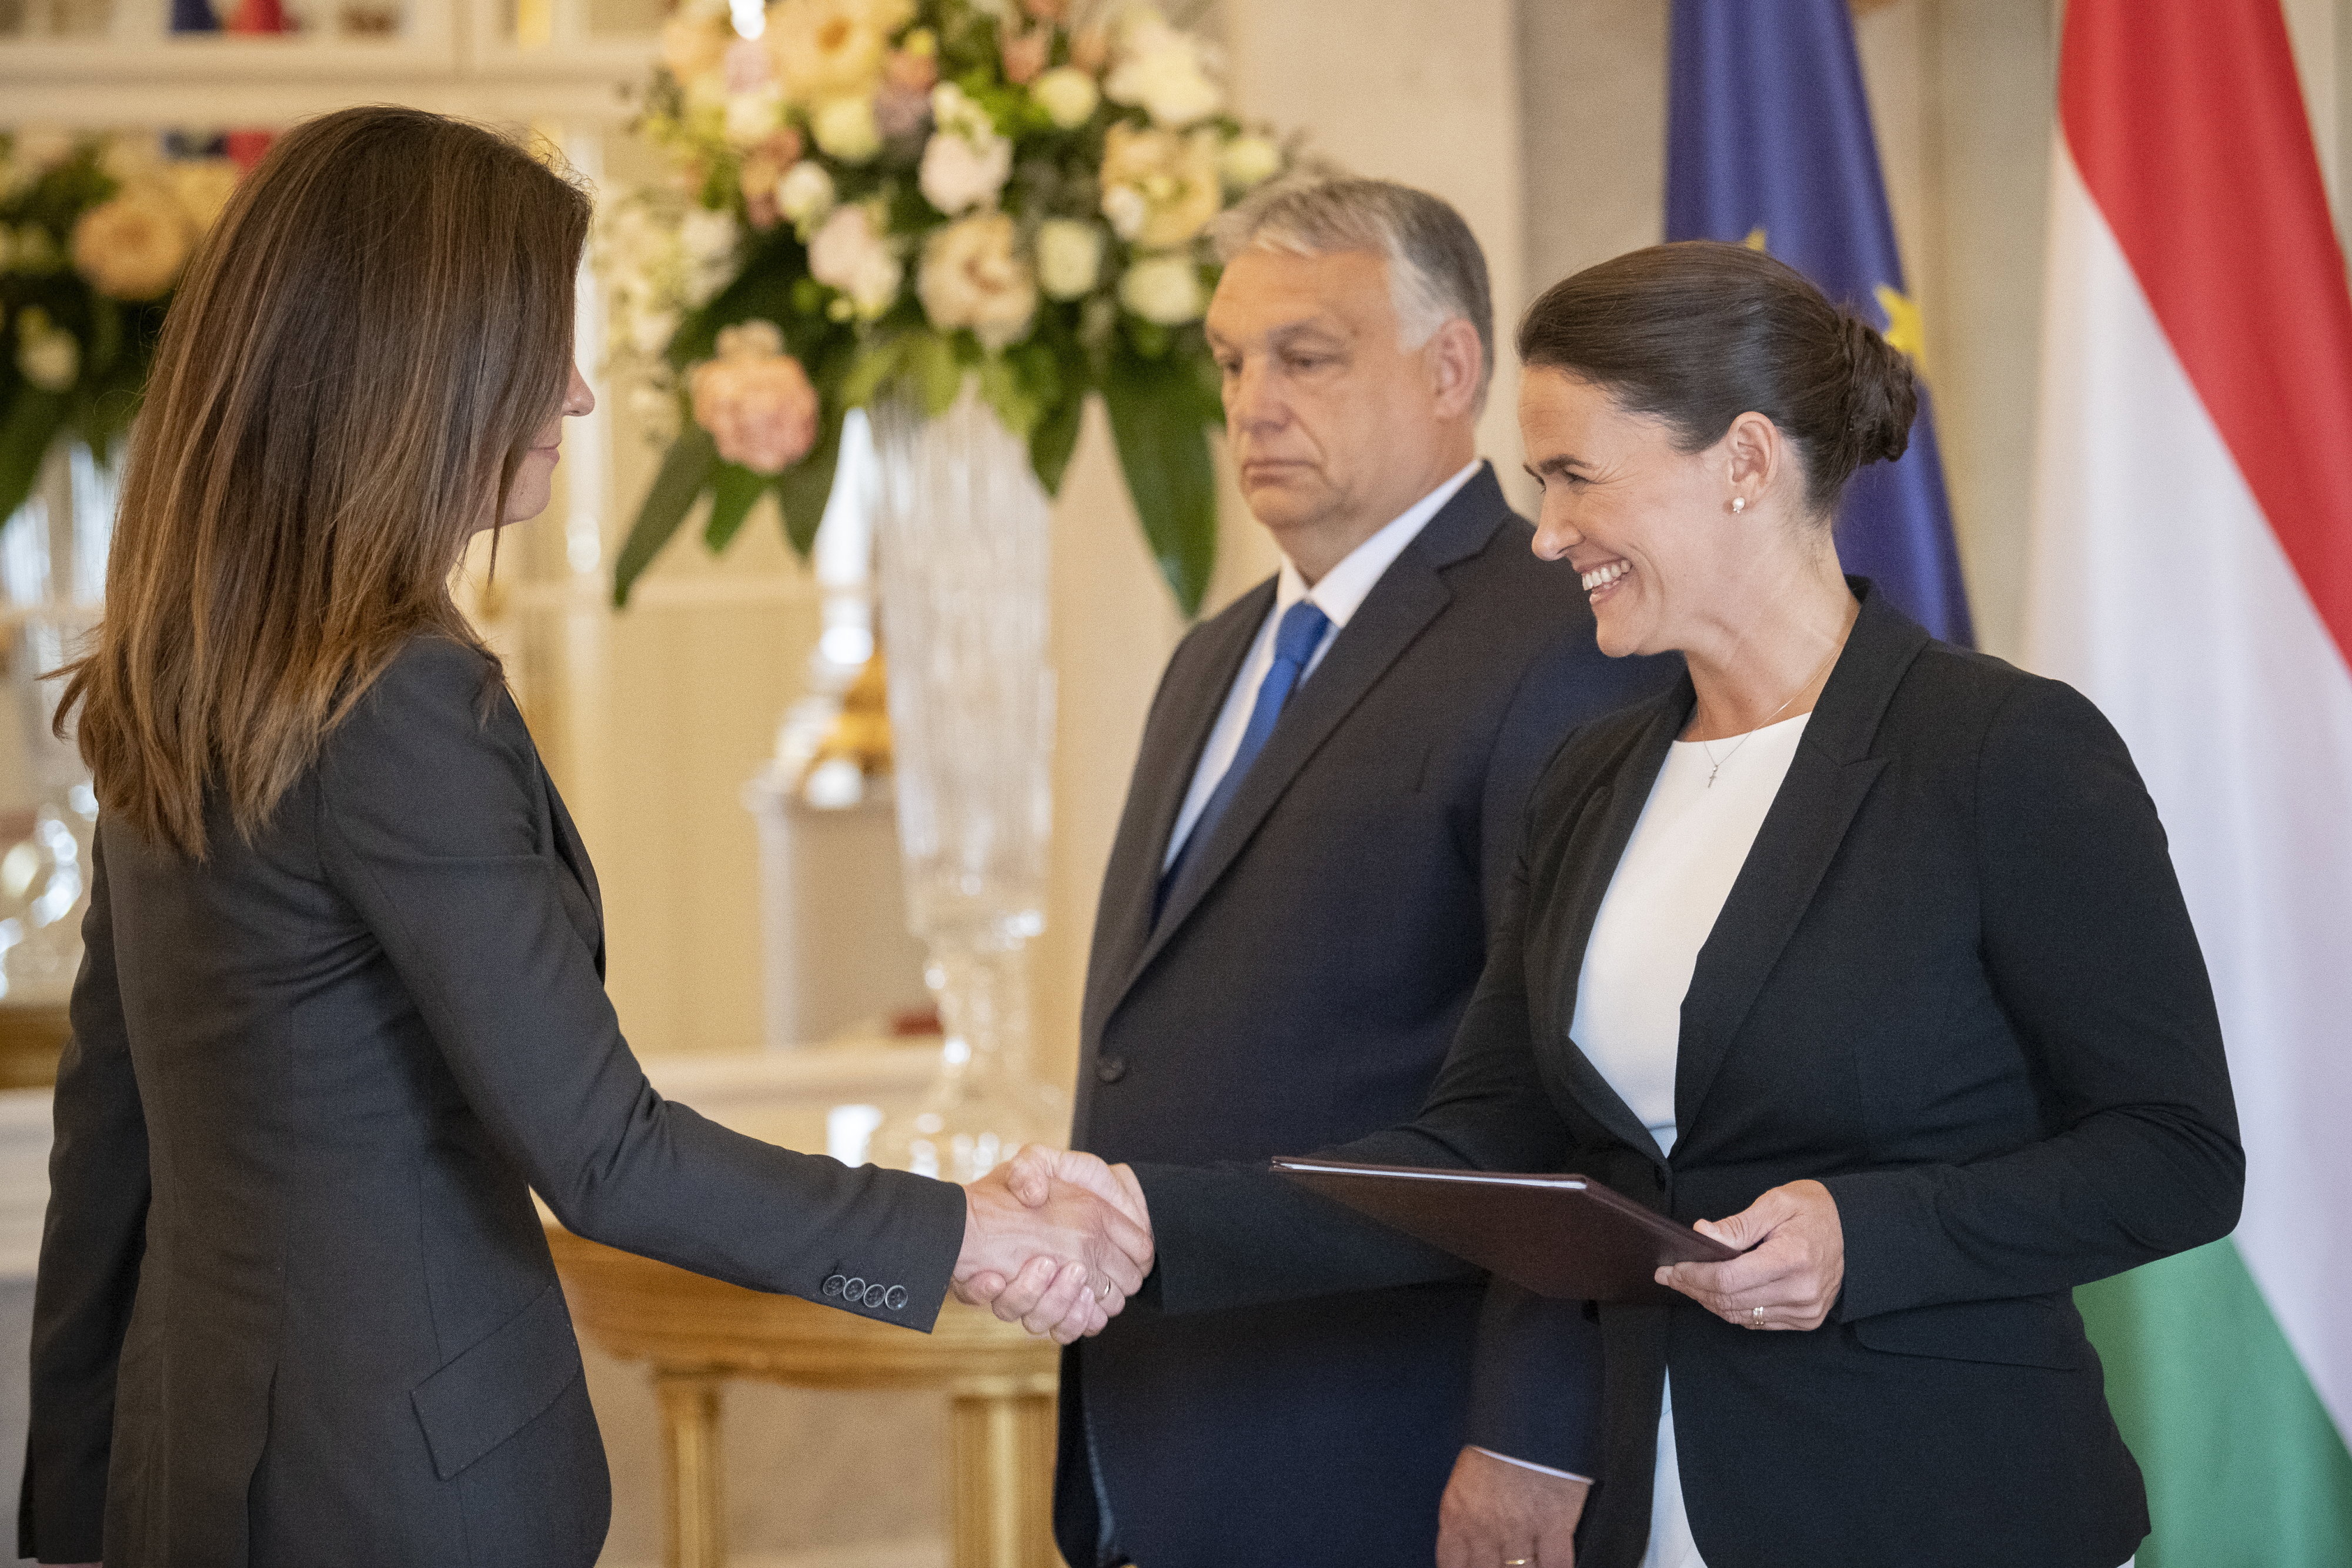 Varga Judit igazságügyi miniszterként átveszi a kinevezési okmányát Novák Katalintól 2022. május 24-én.